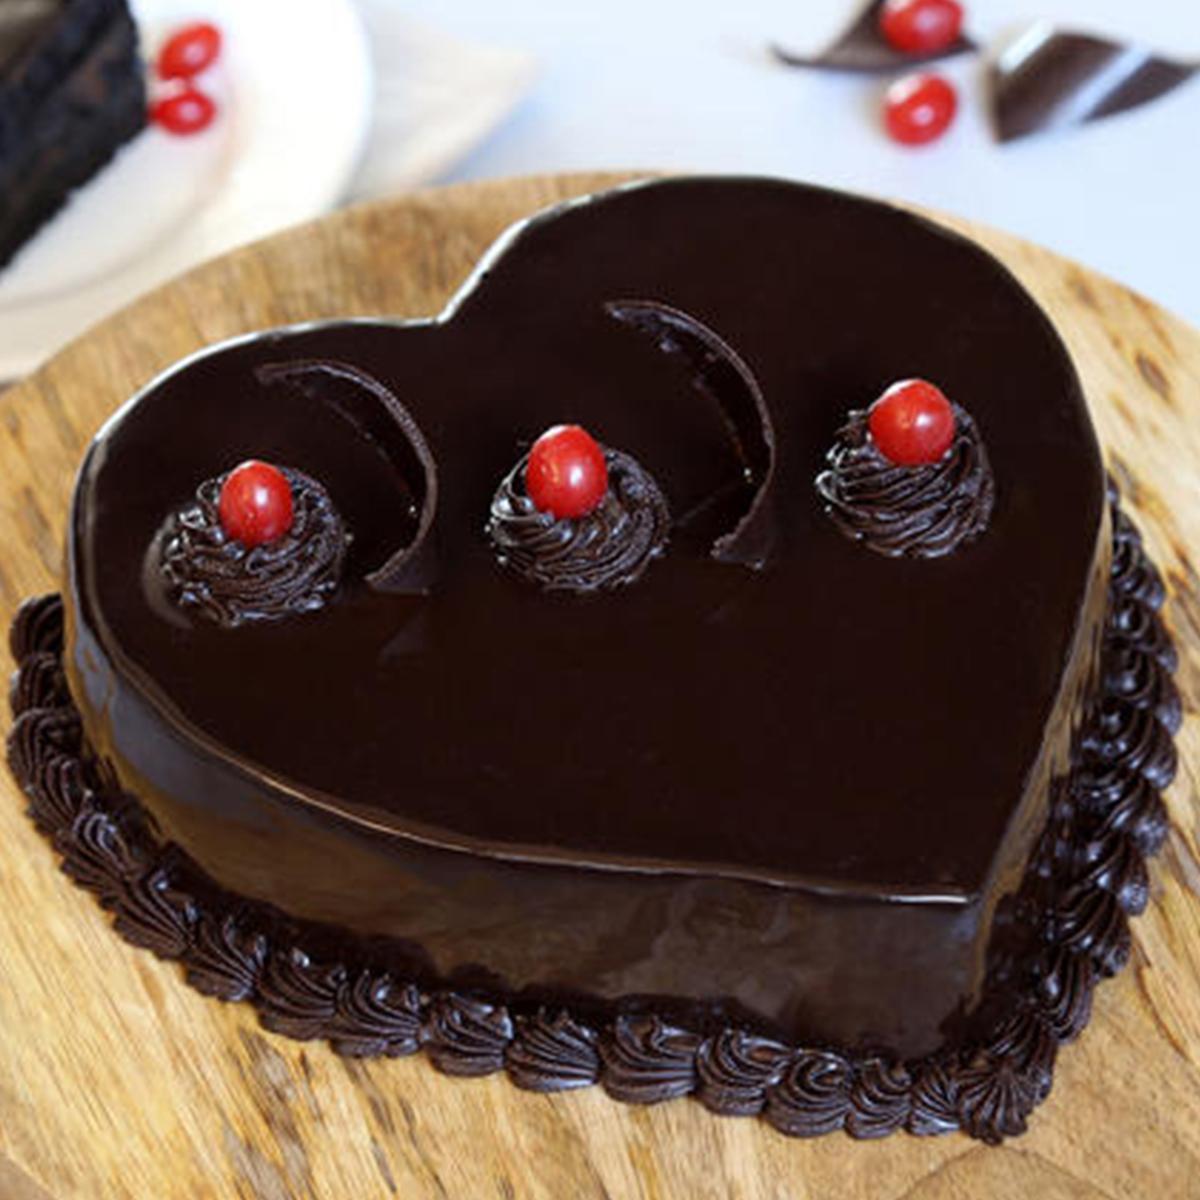 Heart shape Chocolate Truffle Cake